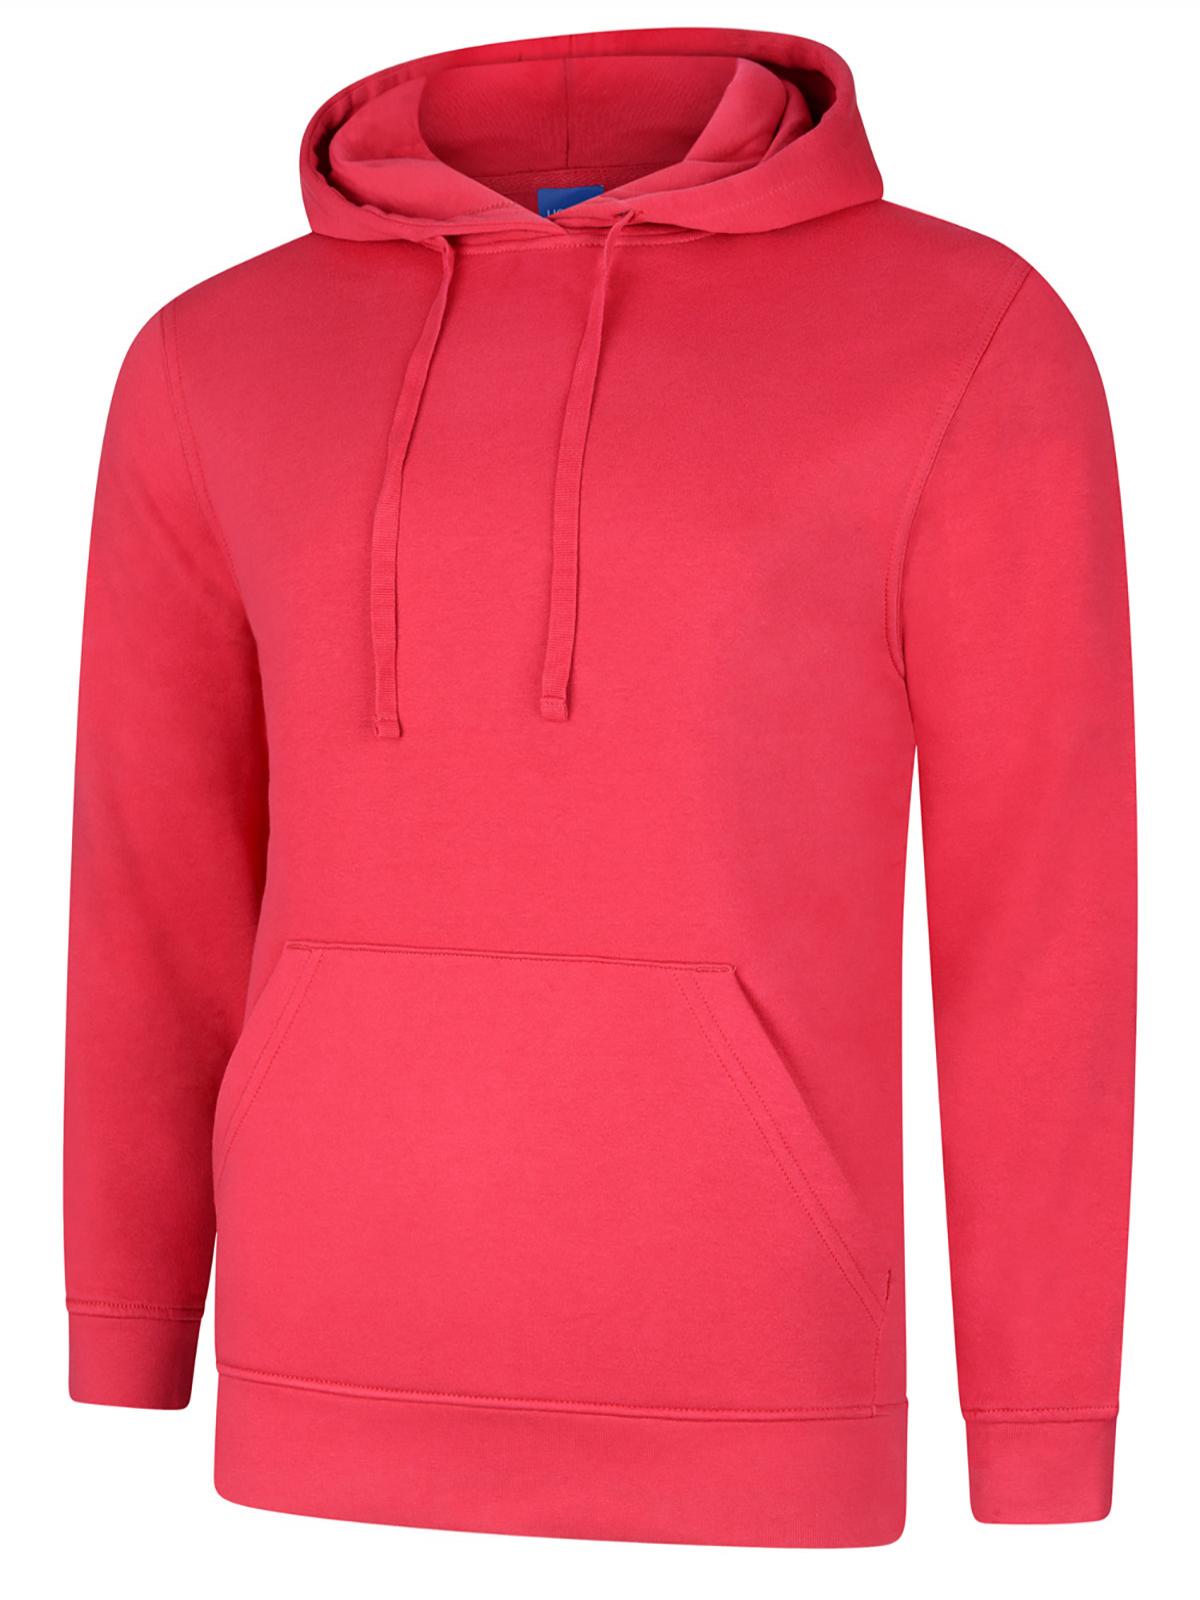 Uneek Deluxe Hooded Sweatshirt UC509 - Cranberry